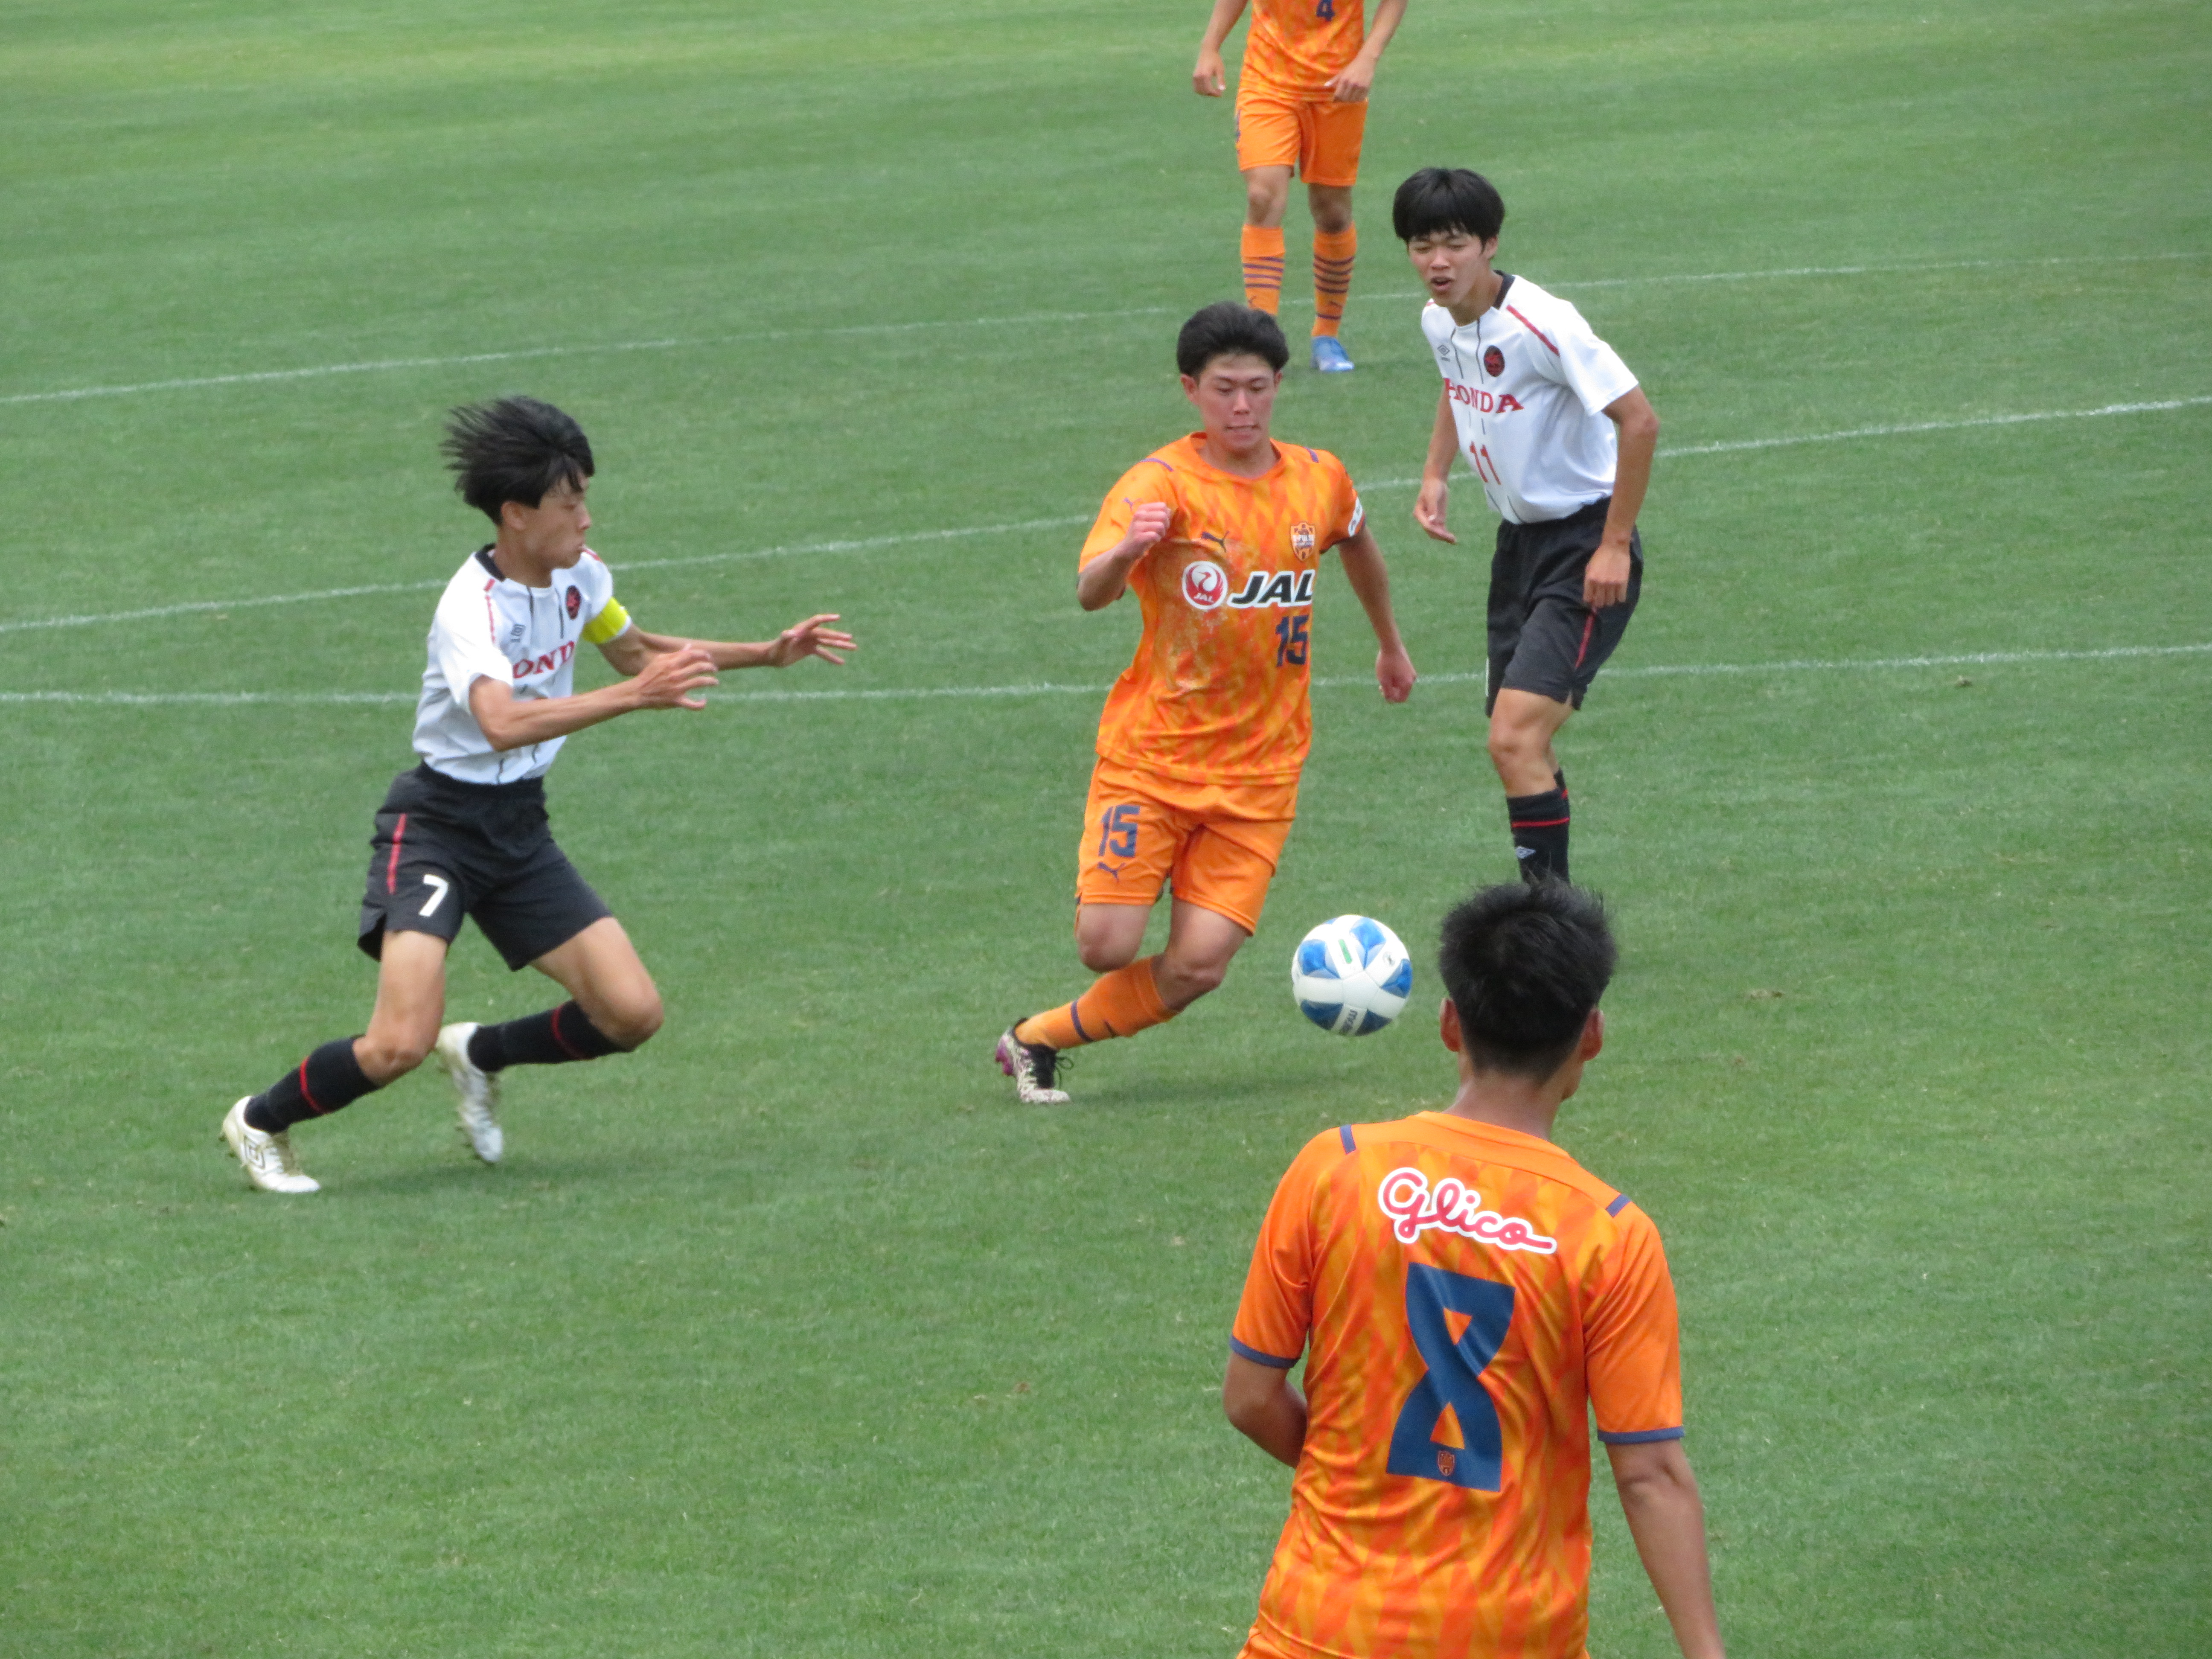 第46回 日本クラブユースサッカー選手権大会 U 18 東海大会 最終トーナメント 清水エスパルスユース Vs Honda Fc U 18 の試合結果について 清水エスパルス公式webサイト